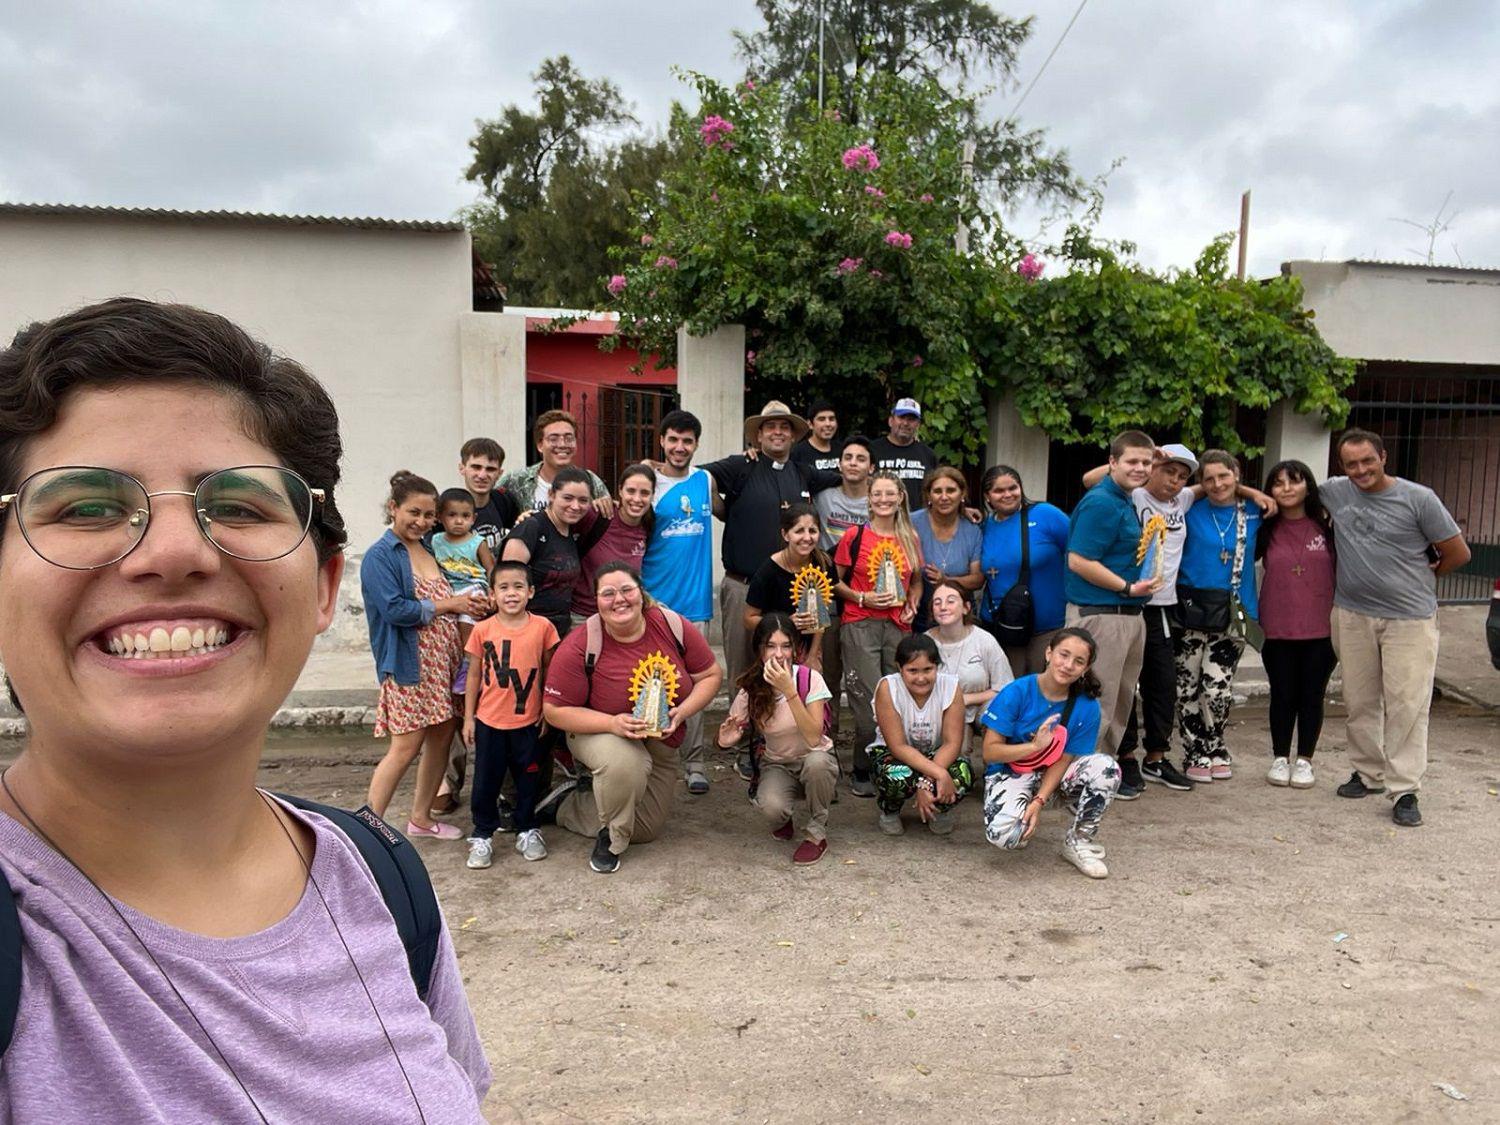 Joacutevenes misionaron por distintos barrios de La Banda